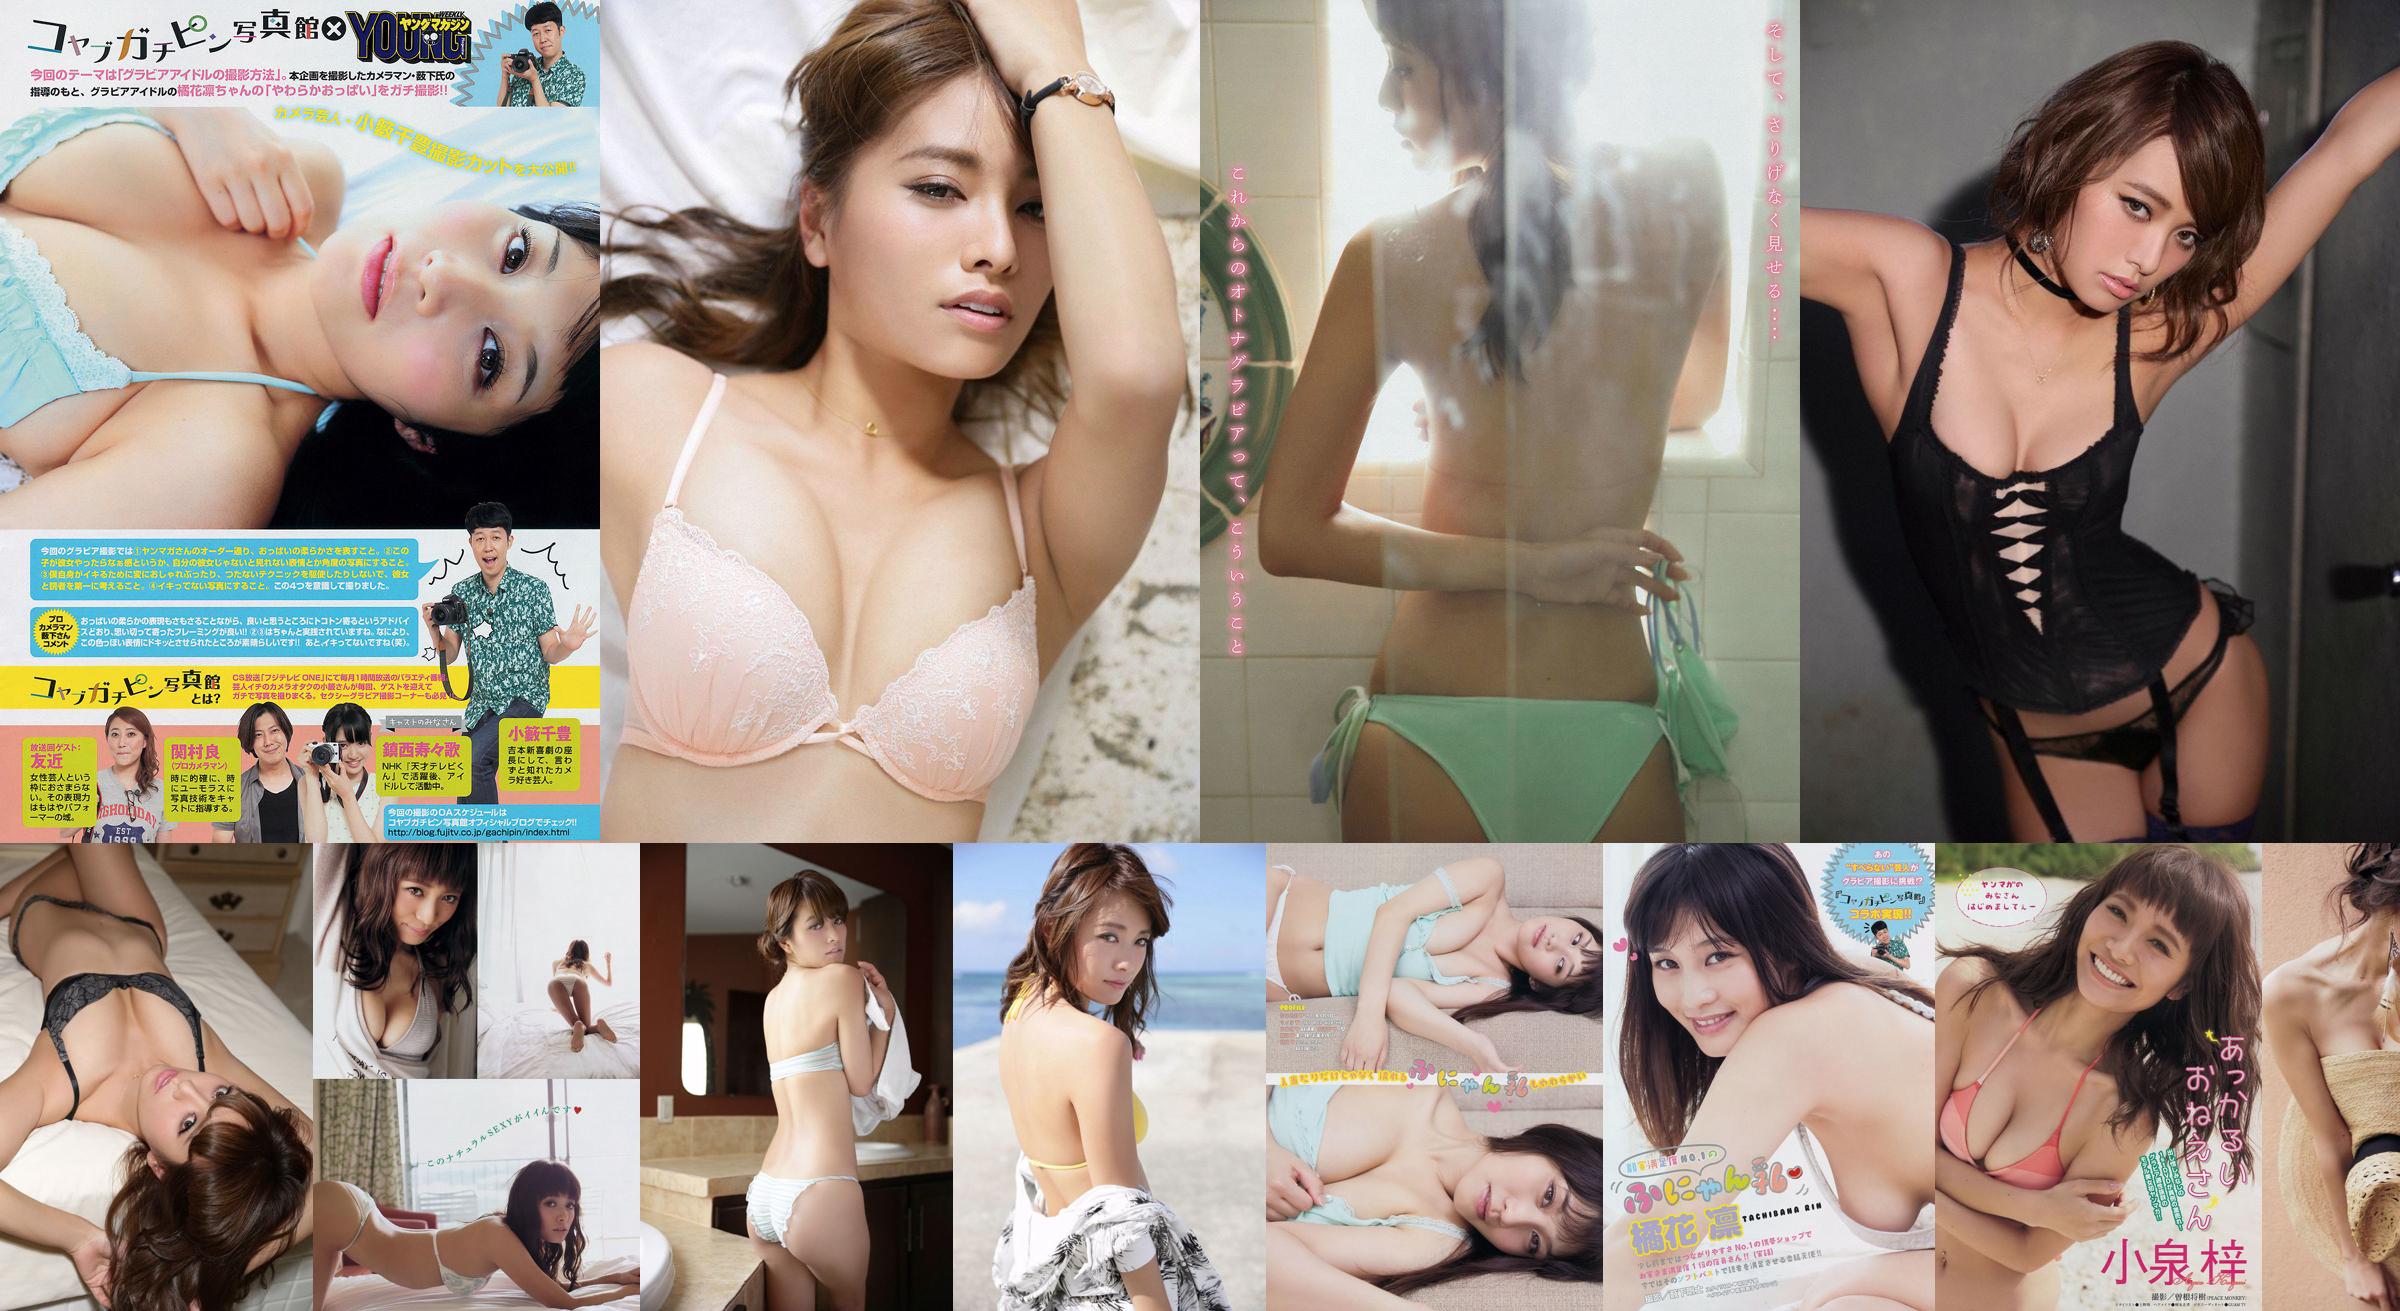 [Junges Magazin] Azusa Koizumi Tachibana Rin 2014 Nr. 43 Fotomagazin No.672e36 Seite 6